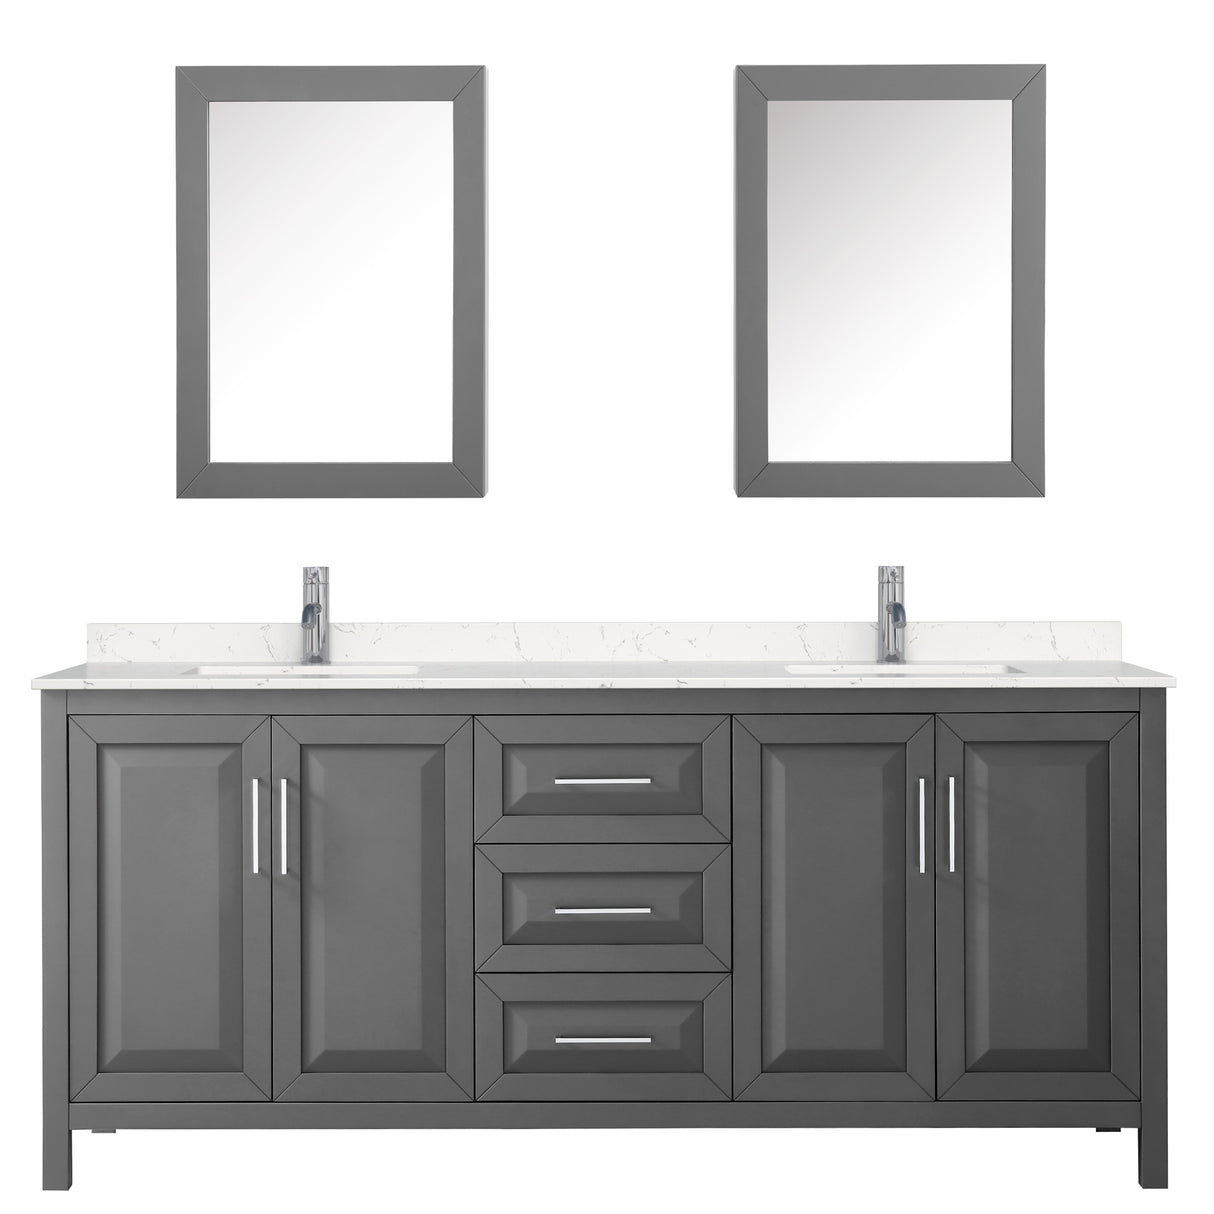 Daria 80 Inch Double Bathroom Vanity in Dark Gray Carrara Cultured Marble Countertop Undermount Square Sinks Medicine Cabinets